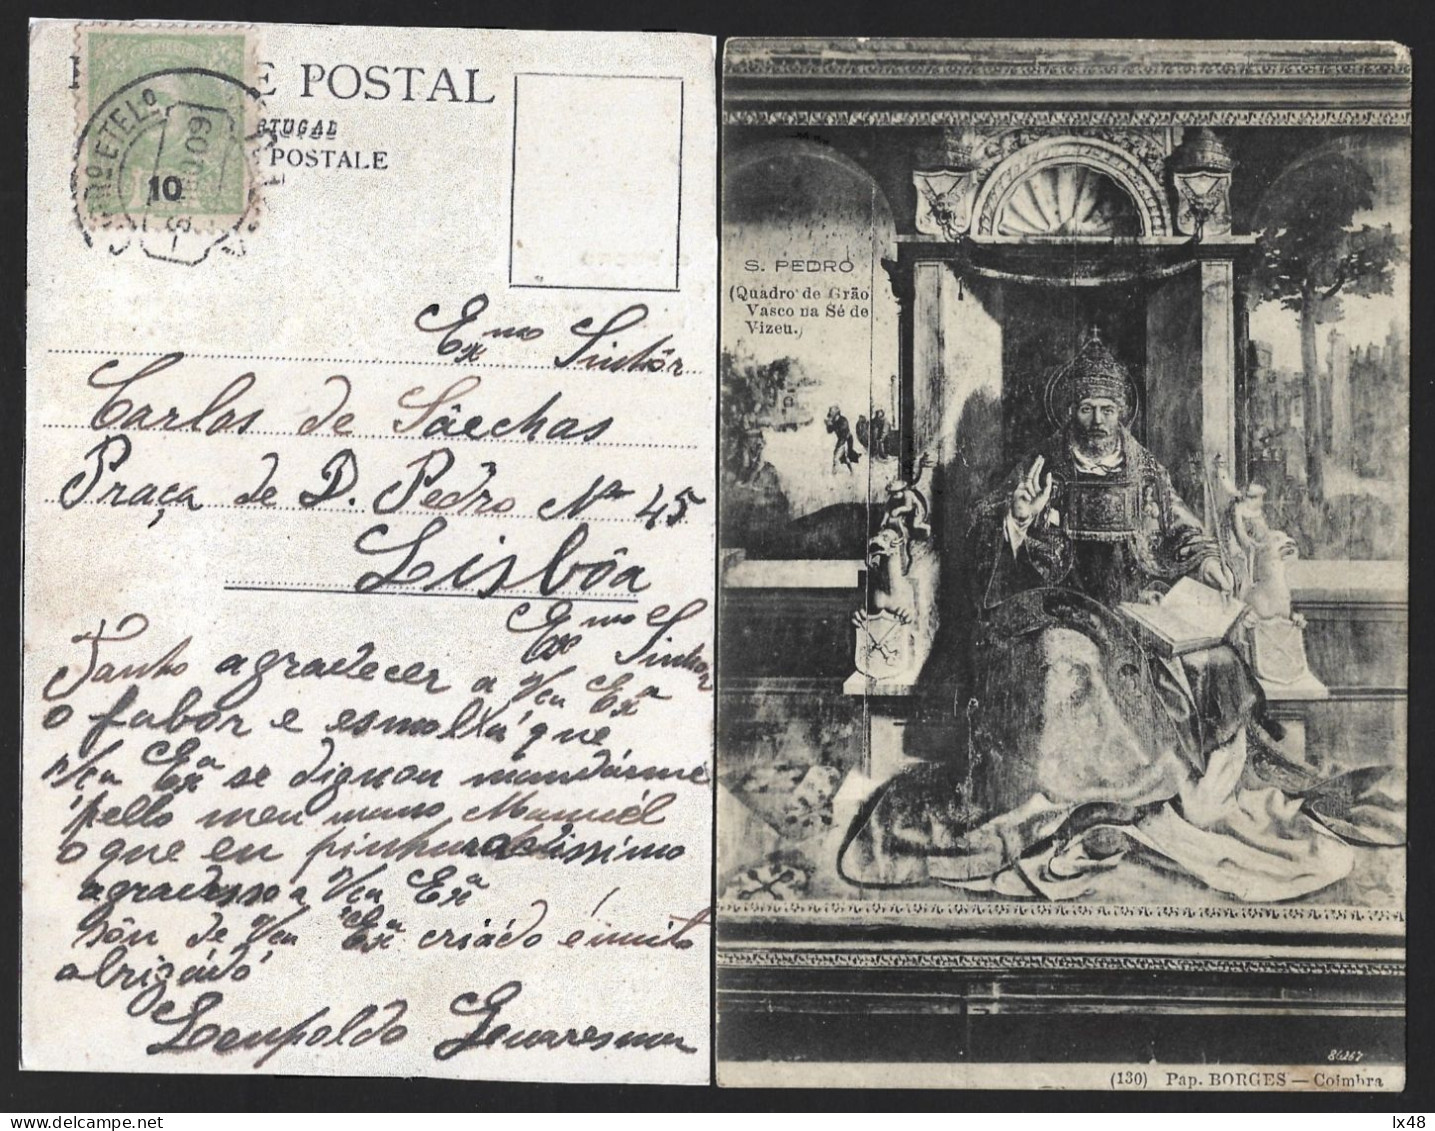 Postal Com Pintura 'S. Pedro' Quadro De Grão Vasco, Na Sé Viseu. Selo De 10 Rs D. Carlos Obliterado Em 1909 Em Viseu. - Cartas & Documentos